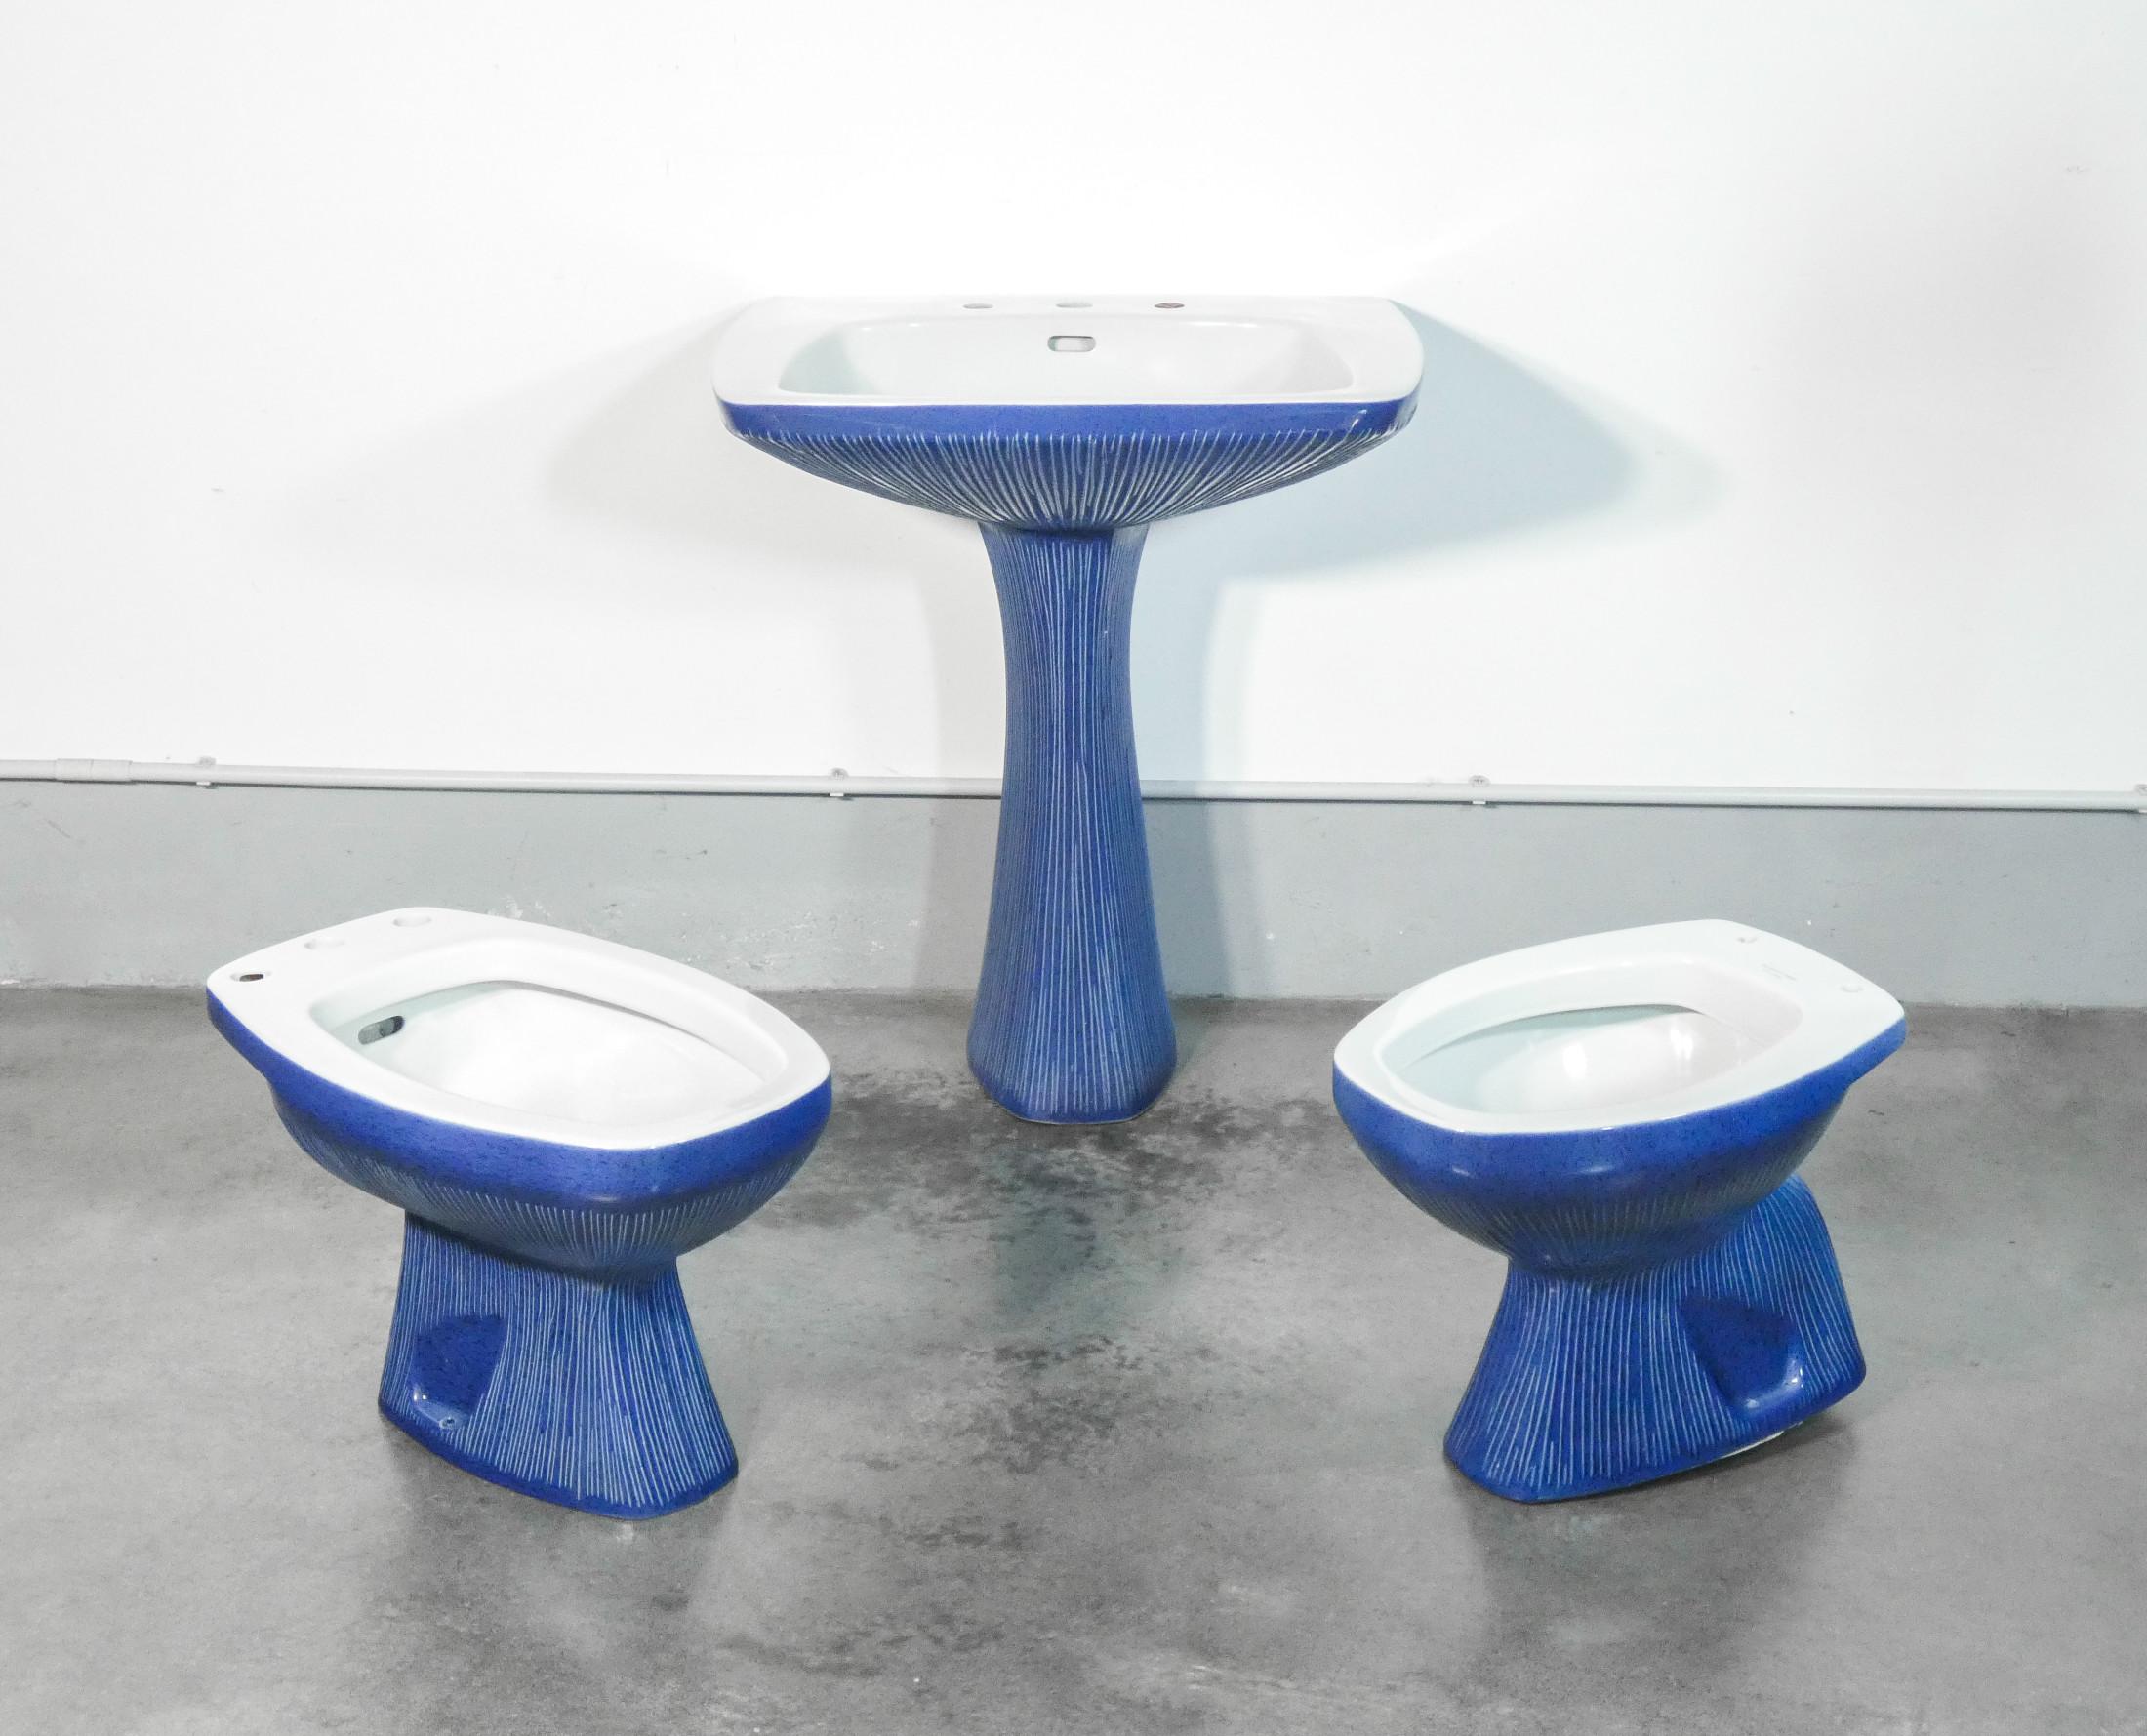 Antonia CAMPI design.
GARDENA model bathroom set.
Washbasin,
toilet and bidet,
in lavenite.
S.C.I. Laveno

Origin
Italy

Period
1968

Designer
Antonia CAMPI
(1921 - 2019) was an Italian designer. She attended the Collegio delle